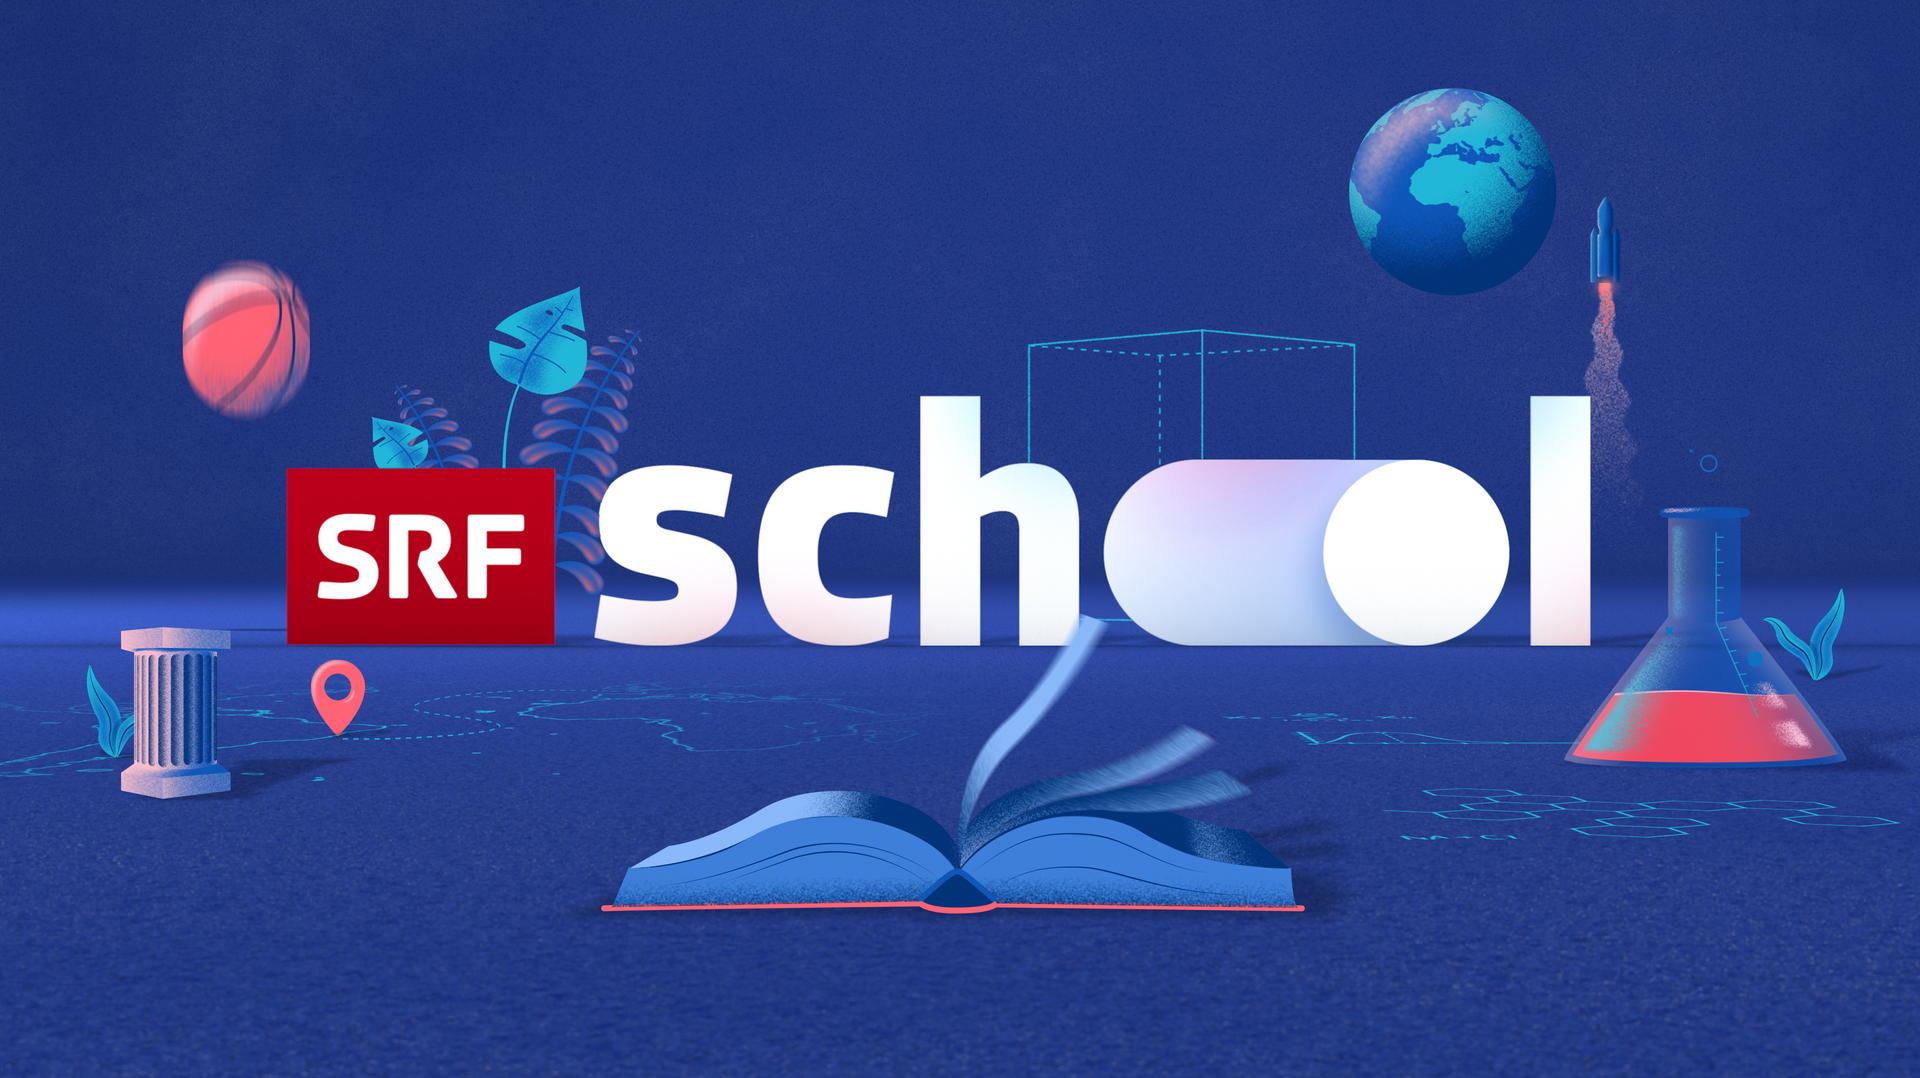 Logo SRF school auf blauem Hintergrund mit Buch, Erlenmeyerkolben, Basketball, Pflanze, Raumfähre